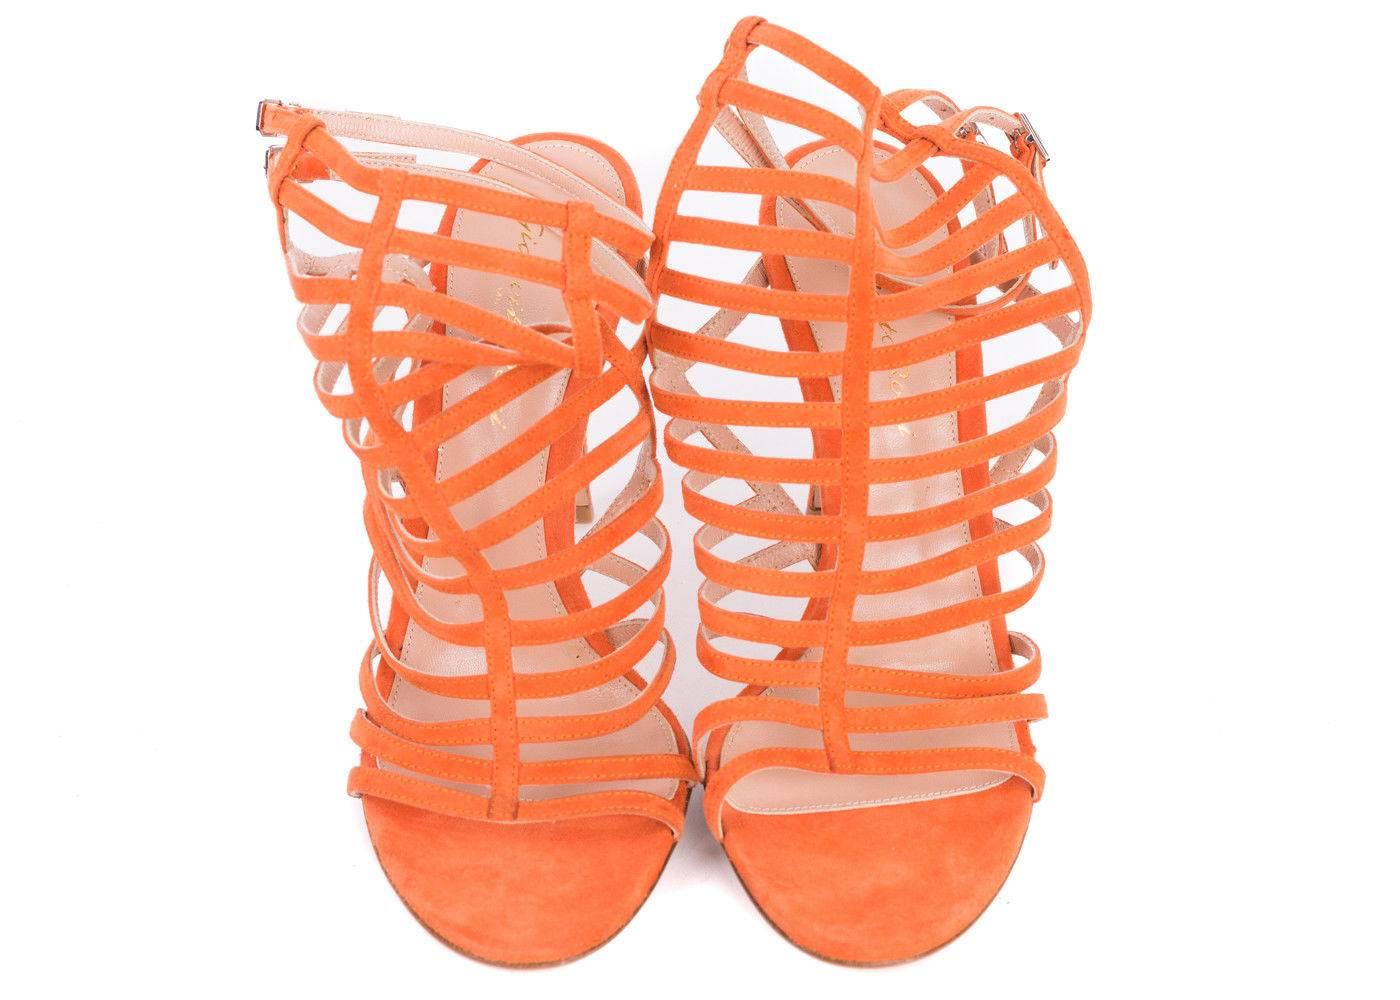  Gianvito-Rossi-Orange-Suede-Caged-Ankle-Strap-Stiletto-Sandals For Sale 1